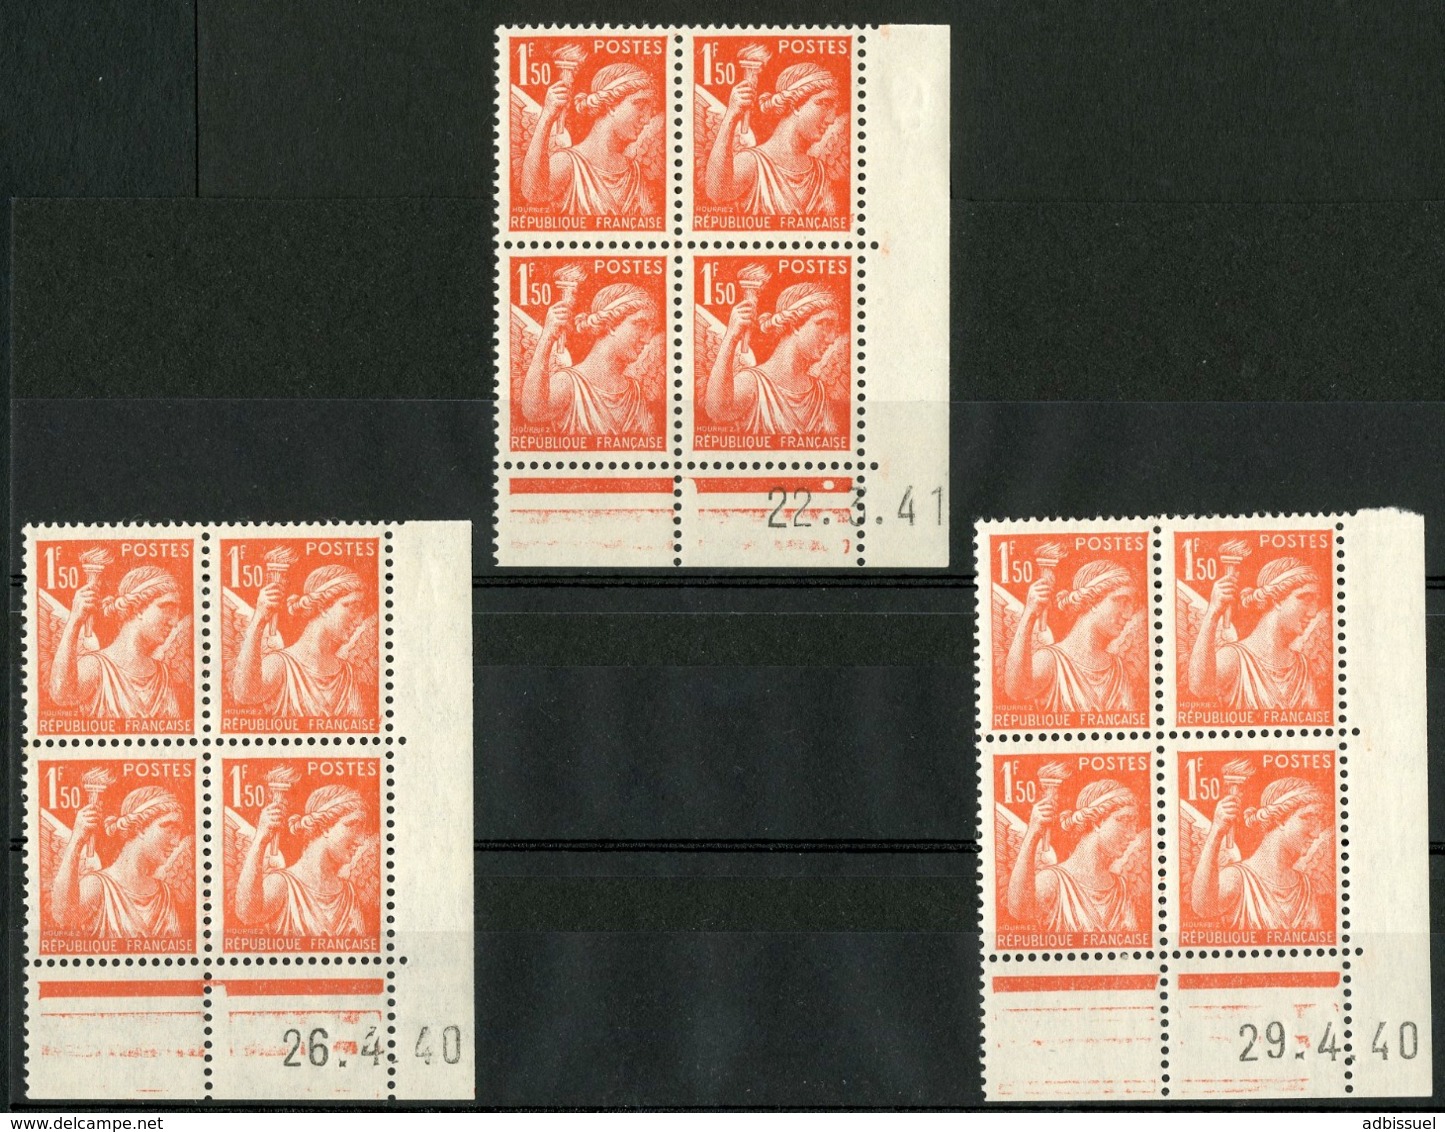 N° 435 ** (MNH). 3 Coins Datés Du 26/4/40, 29/4/40 Et 22/3/41. Blocs De Quatre "Iris". - 1940-1949